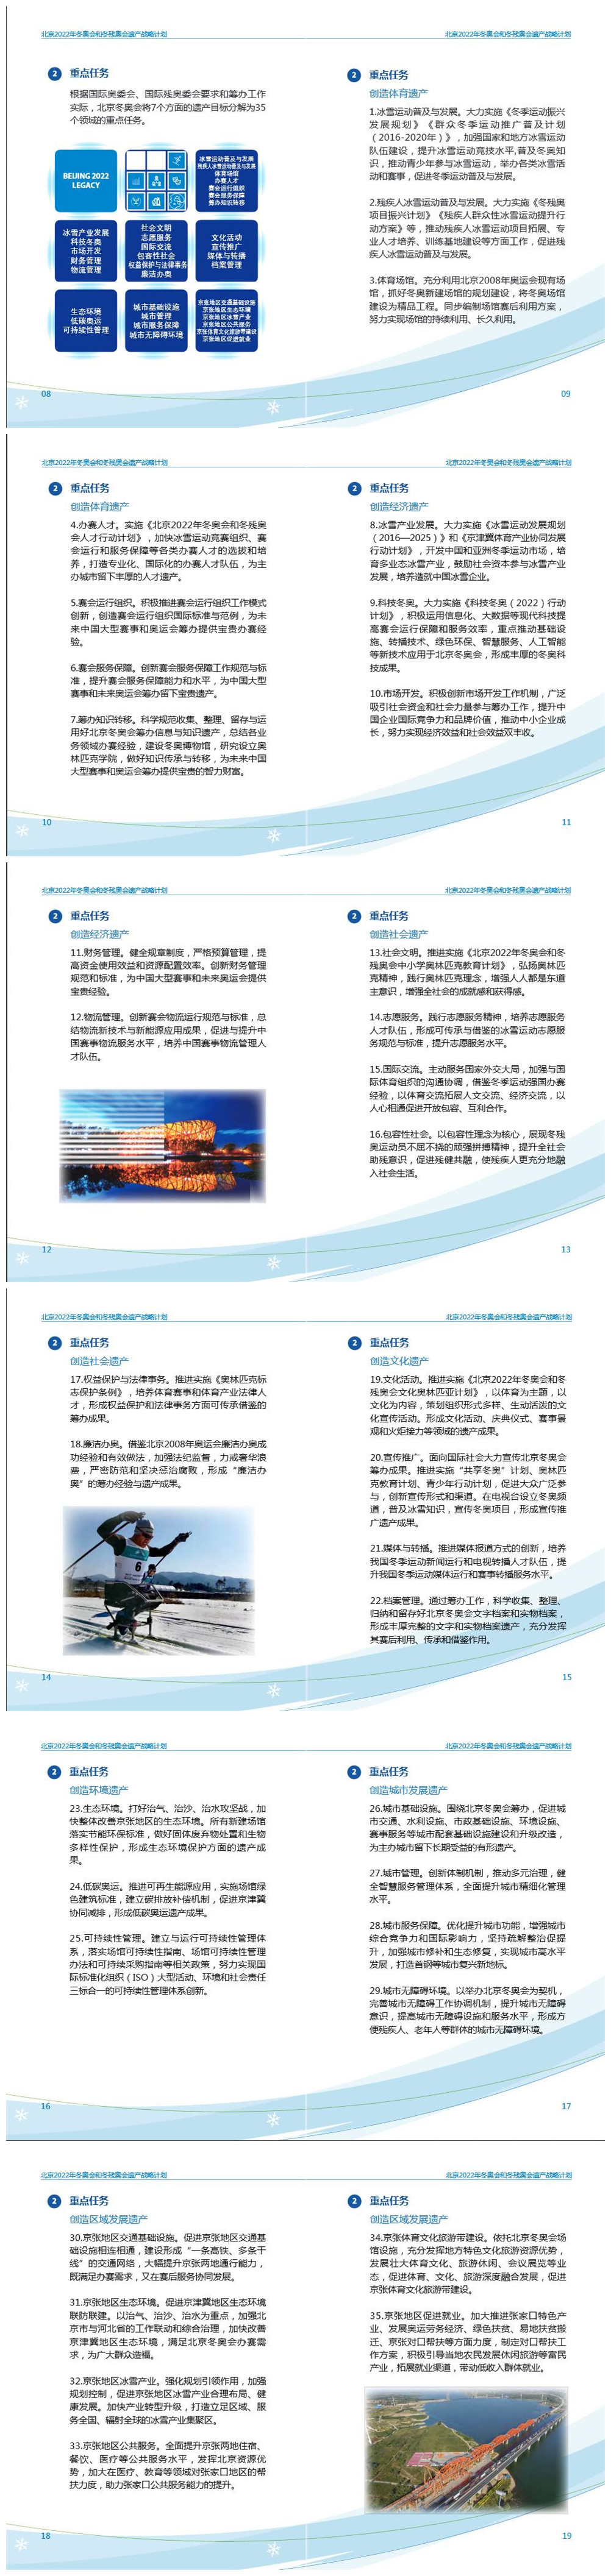 《北京2022年冬奥会和冬残奥会遗产战略计划》2